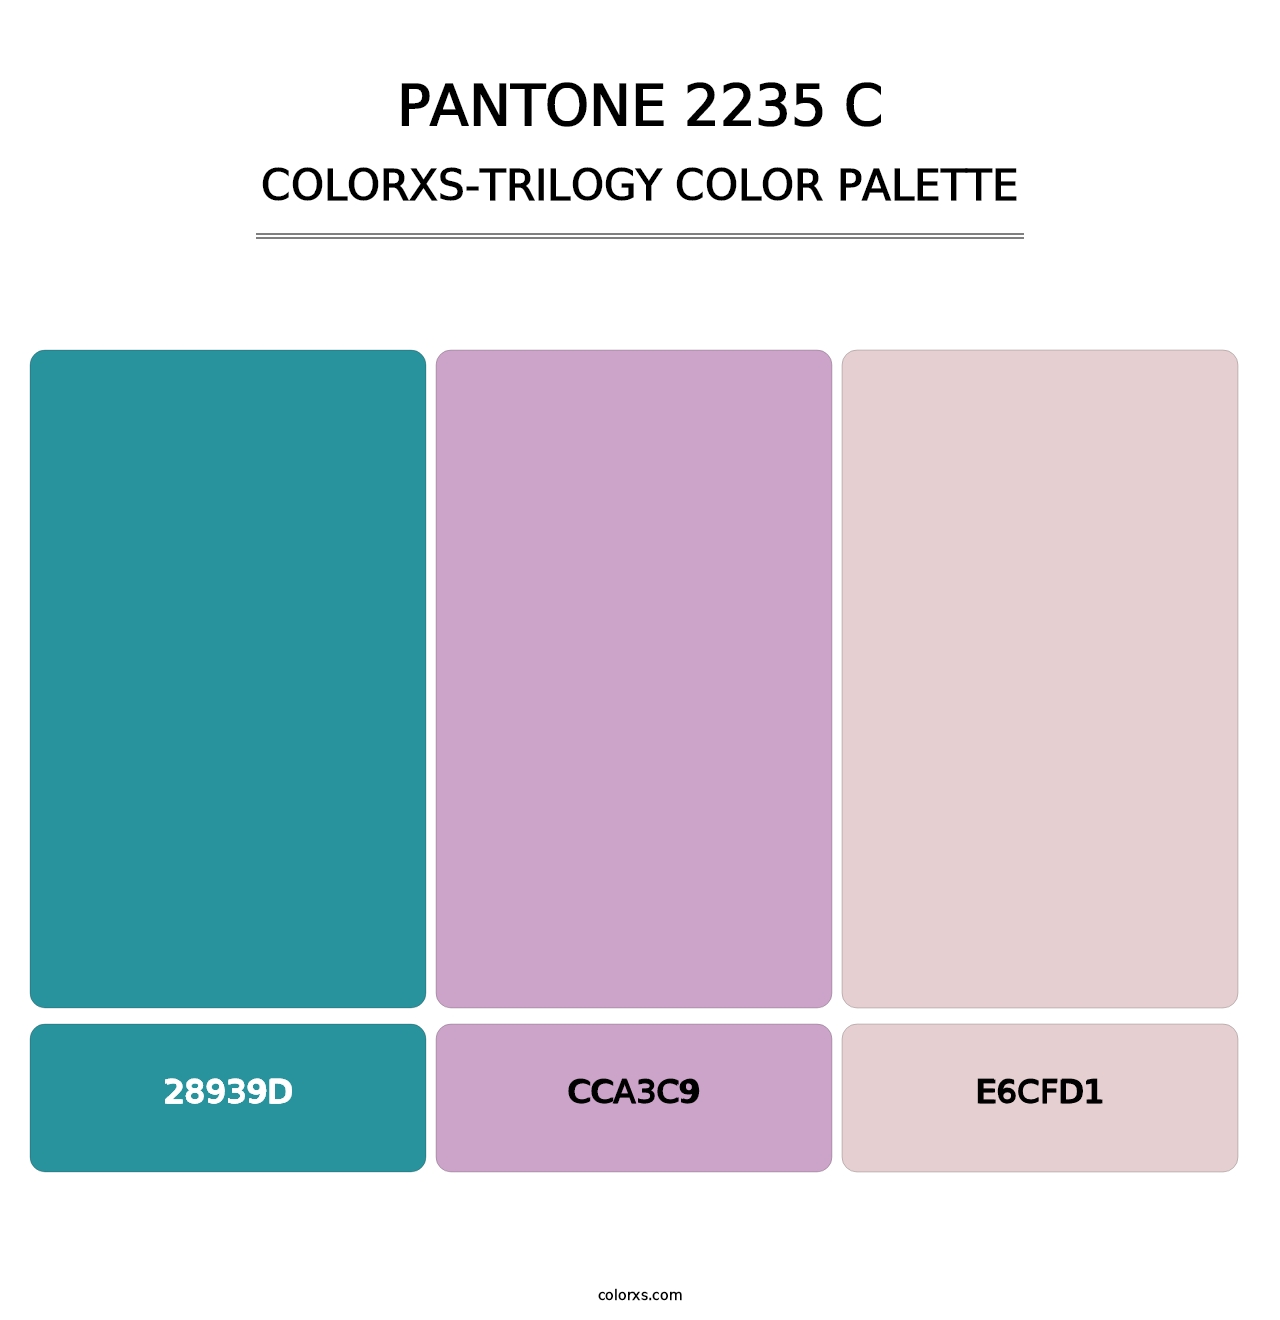 PANTONE 2235 C - Colorxs Trilogy Palette